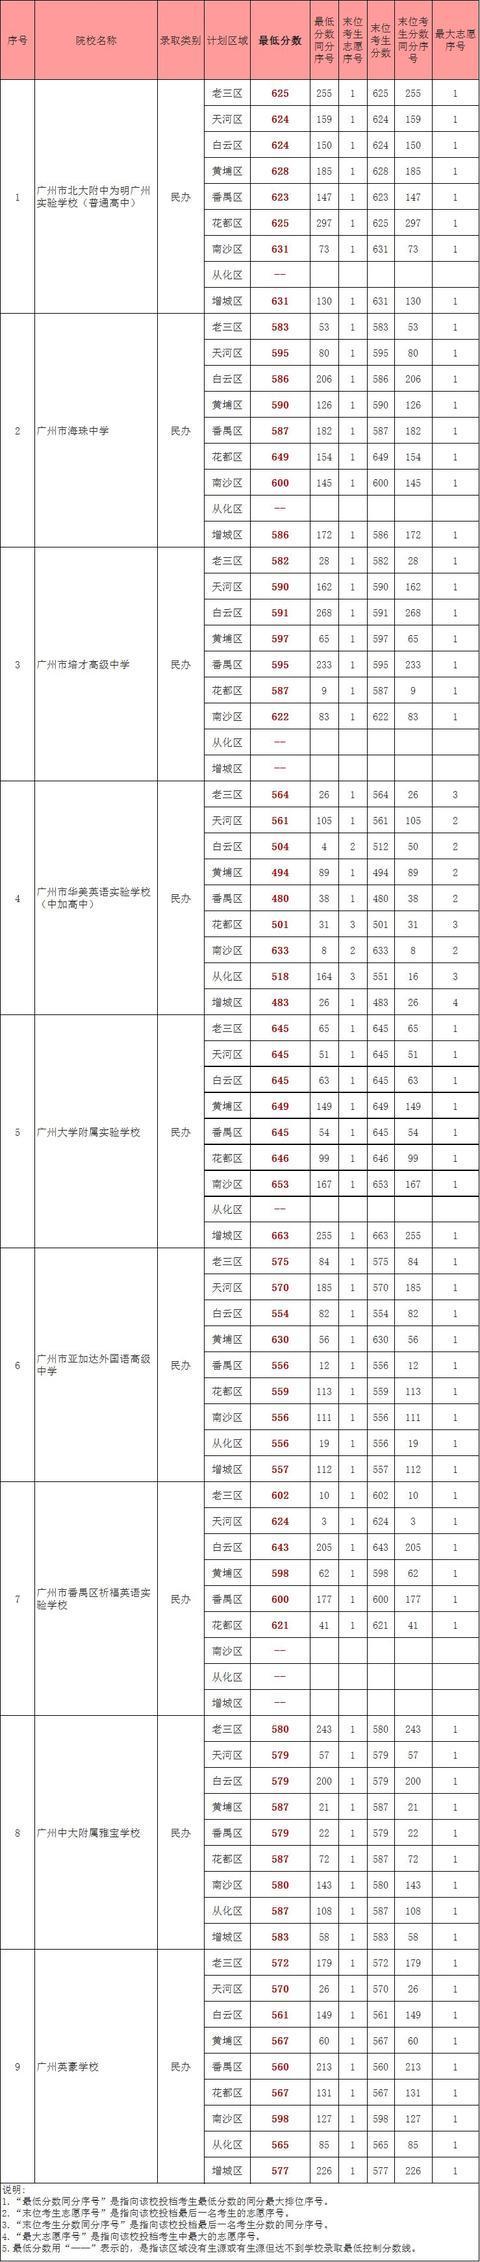 2018年广州中考第二、三批录取分数线公布